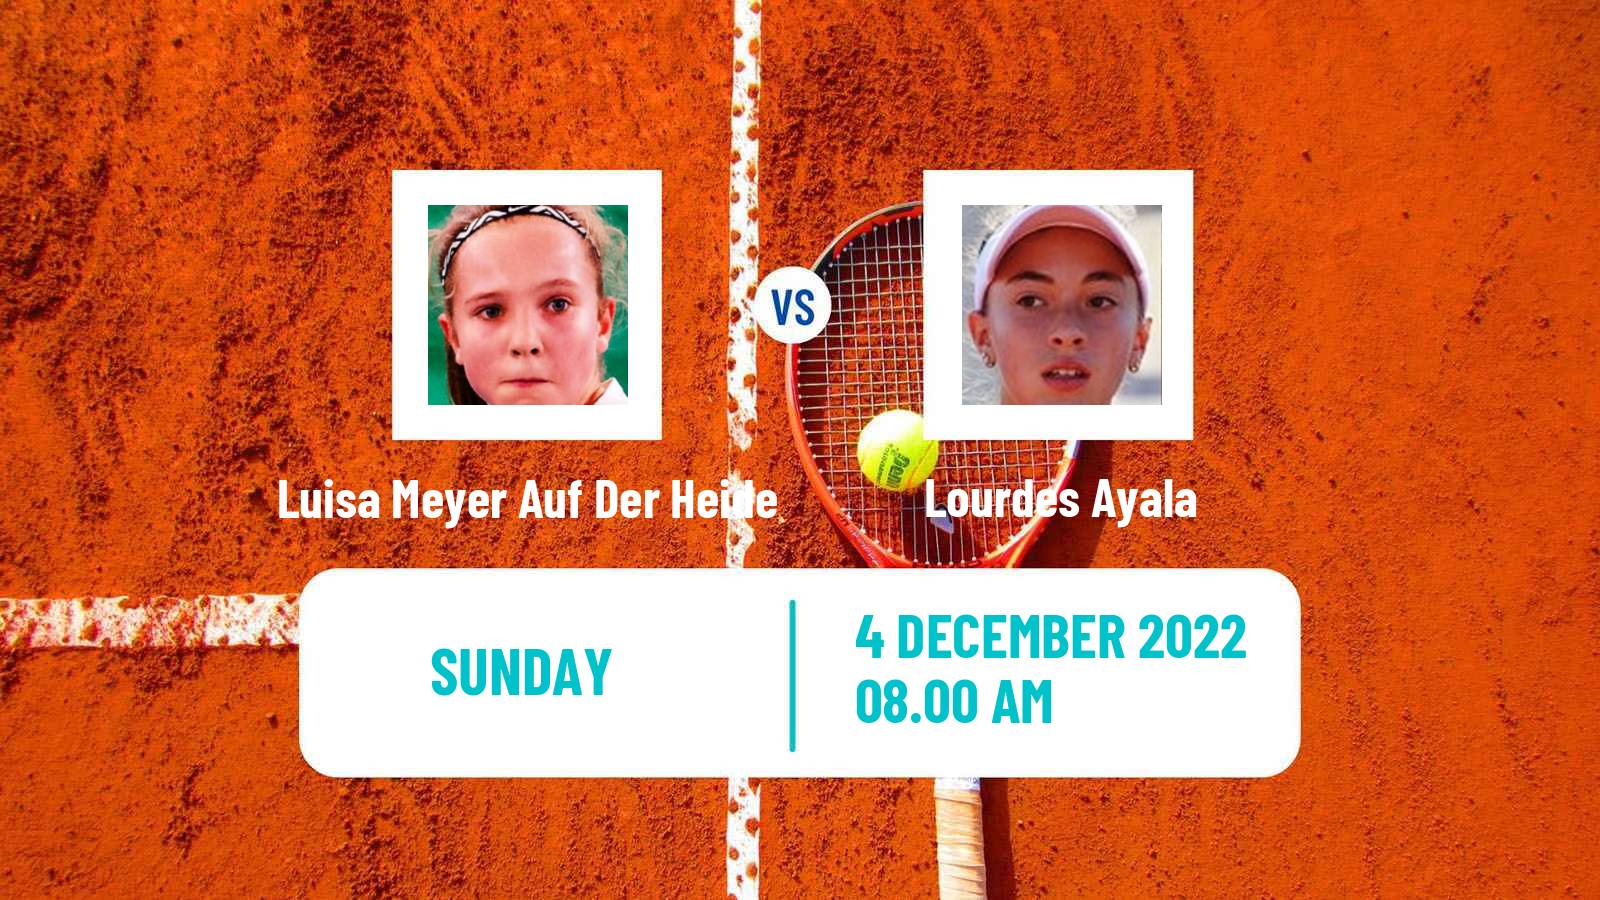 Tennis ITF Tournaments Luisa Meyer Auf Der Heide - Lourdes Ayala